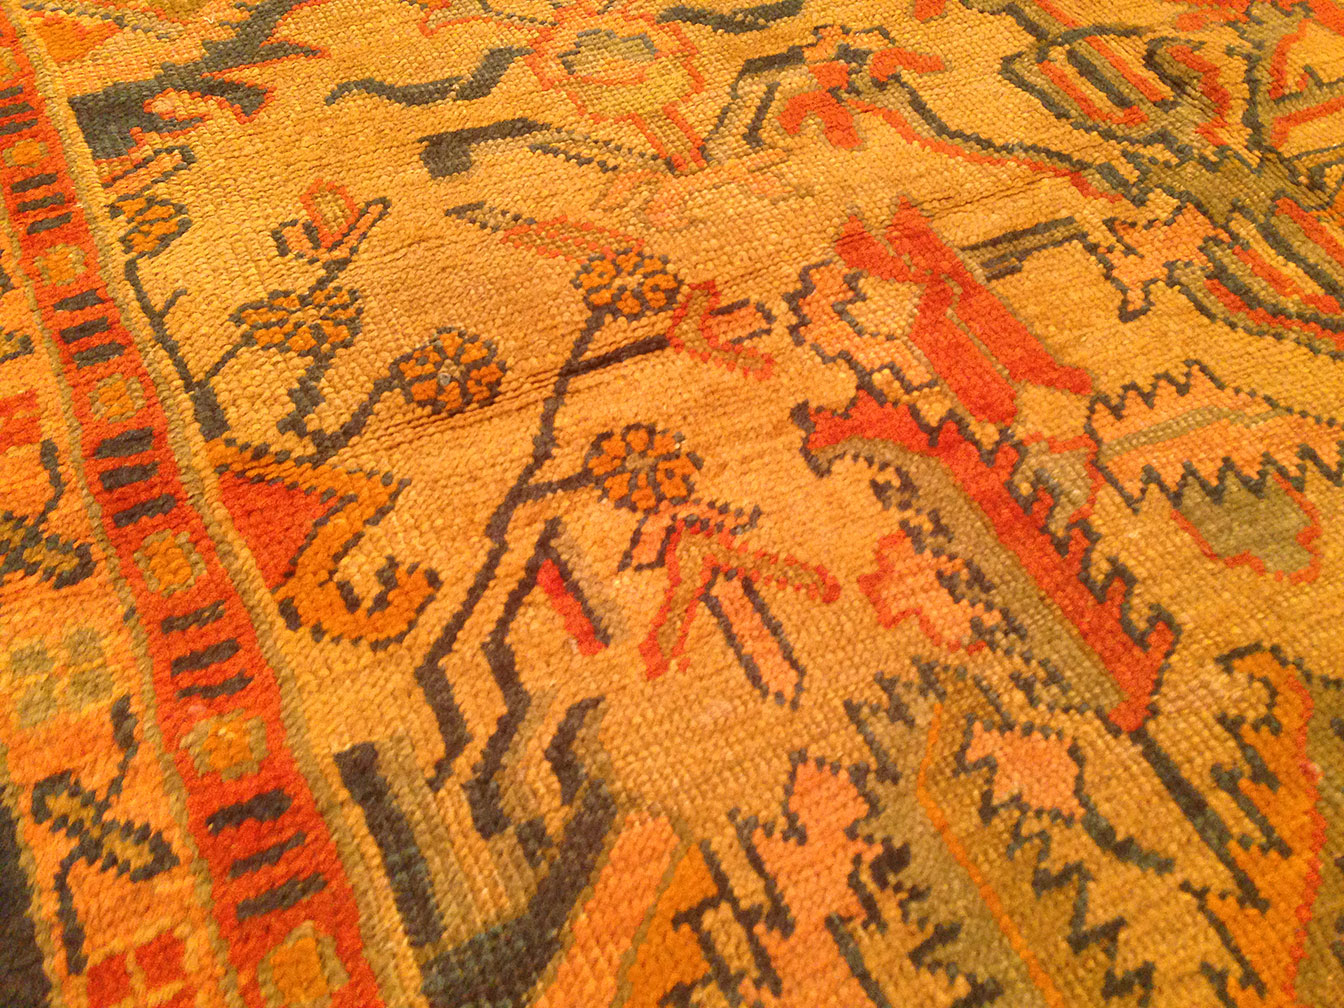 Antique oushak Carpet - # 50336